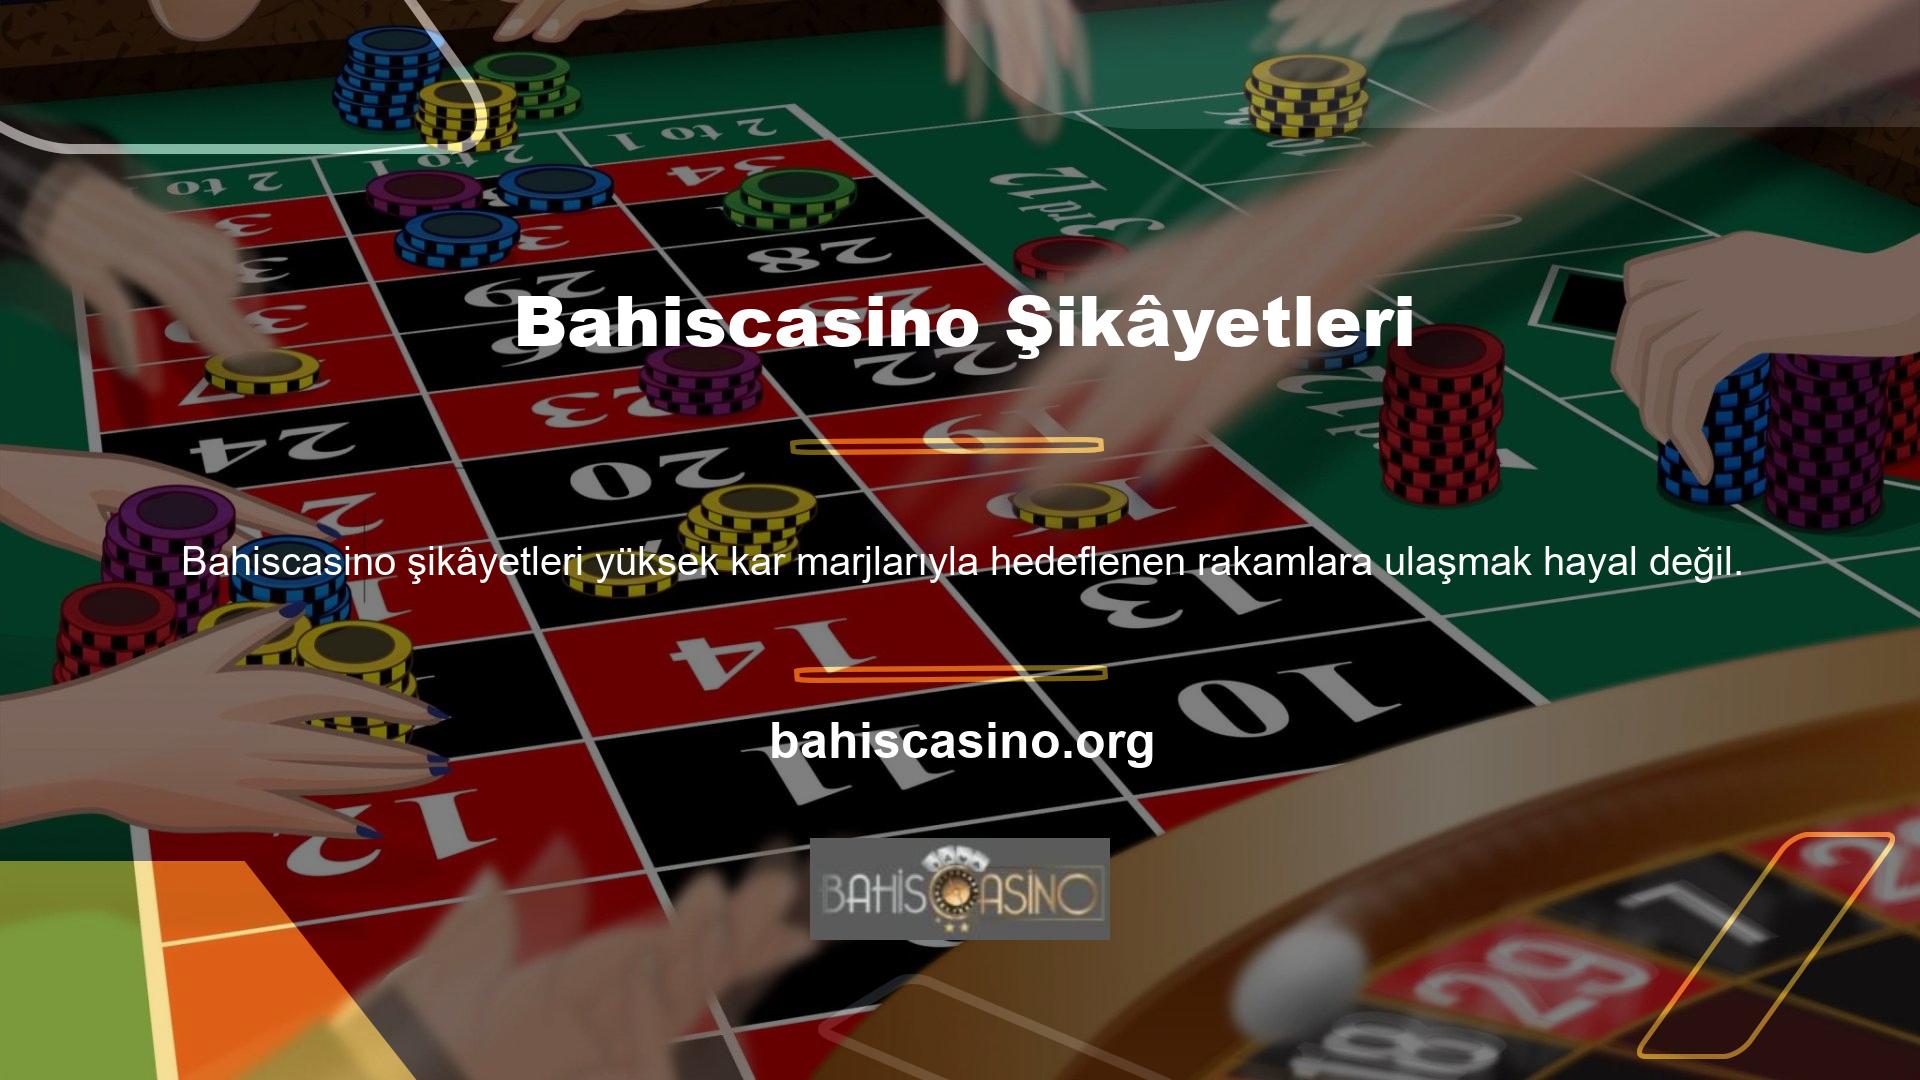 Bahiscasino, hiçbir saygın web sitesinde bulamayacağınız zengin oyun içeriği ve tatmin edici ödüller sunduğu için hiçbir şikâyeti kabul etmeyen bir web sitesidir